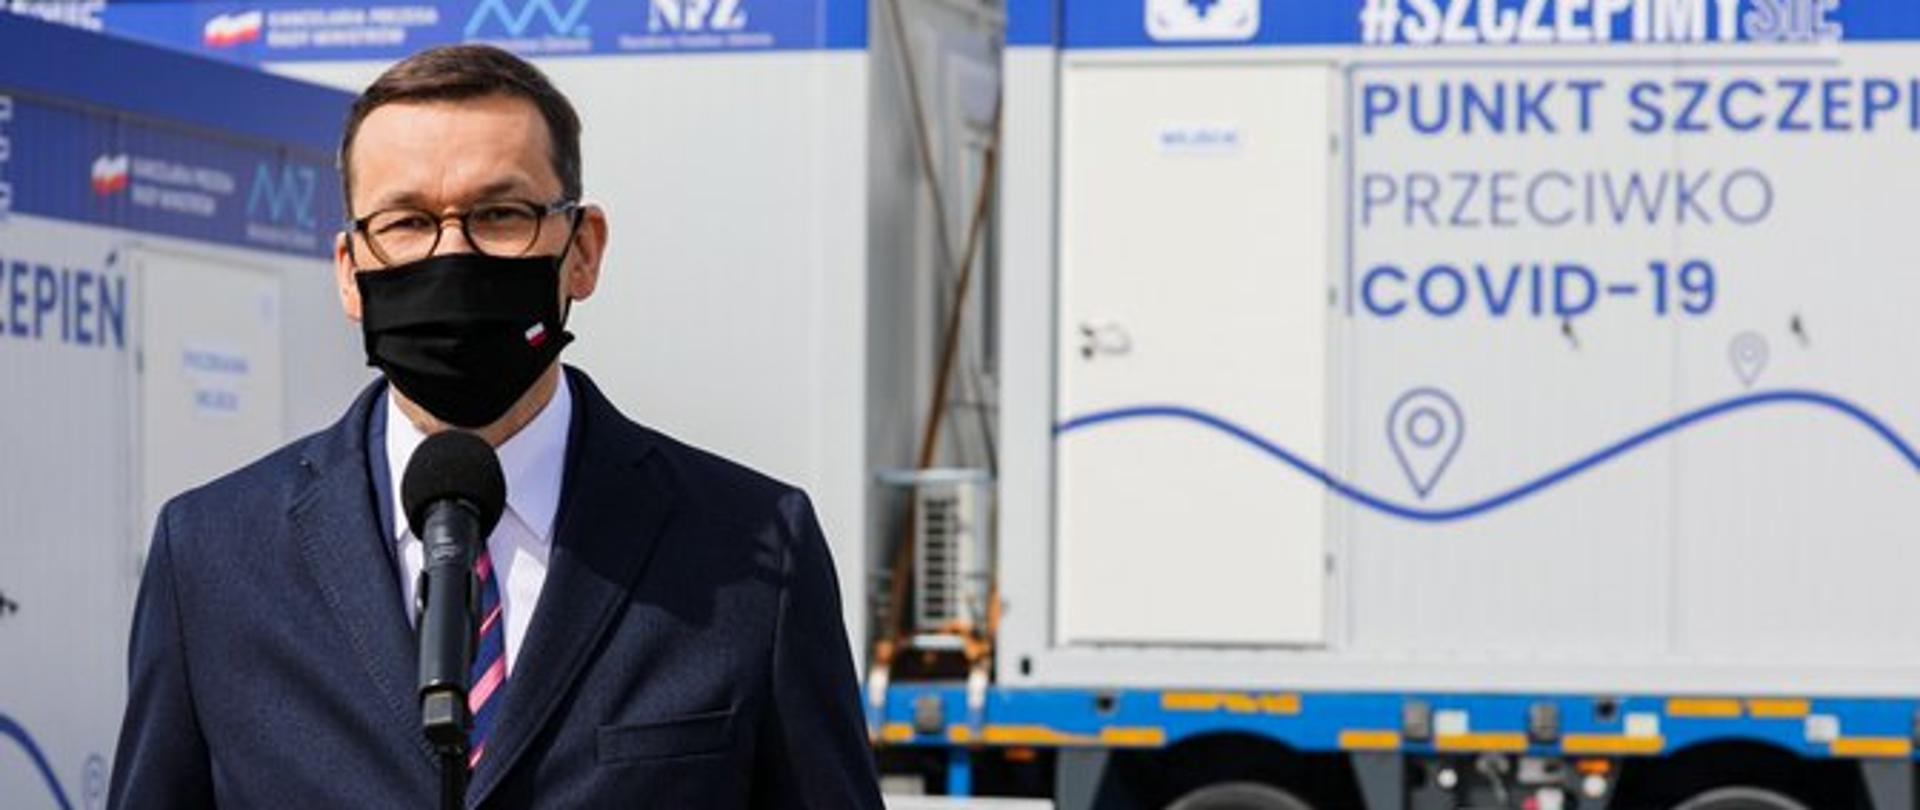 Premier Mateusz Morawiecki - odprawa kontenerów do szczepień mobilnych - akcja Zaszczep się w majówkę